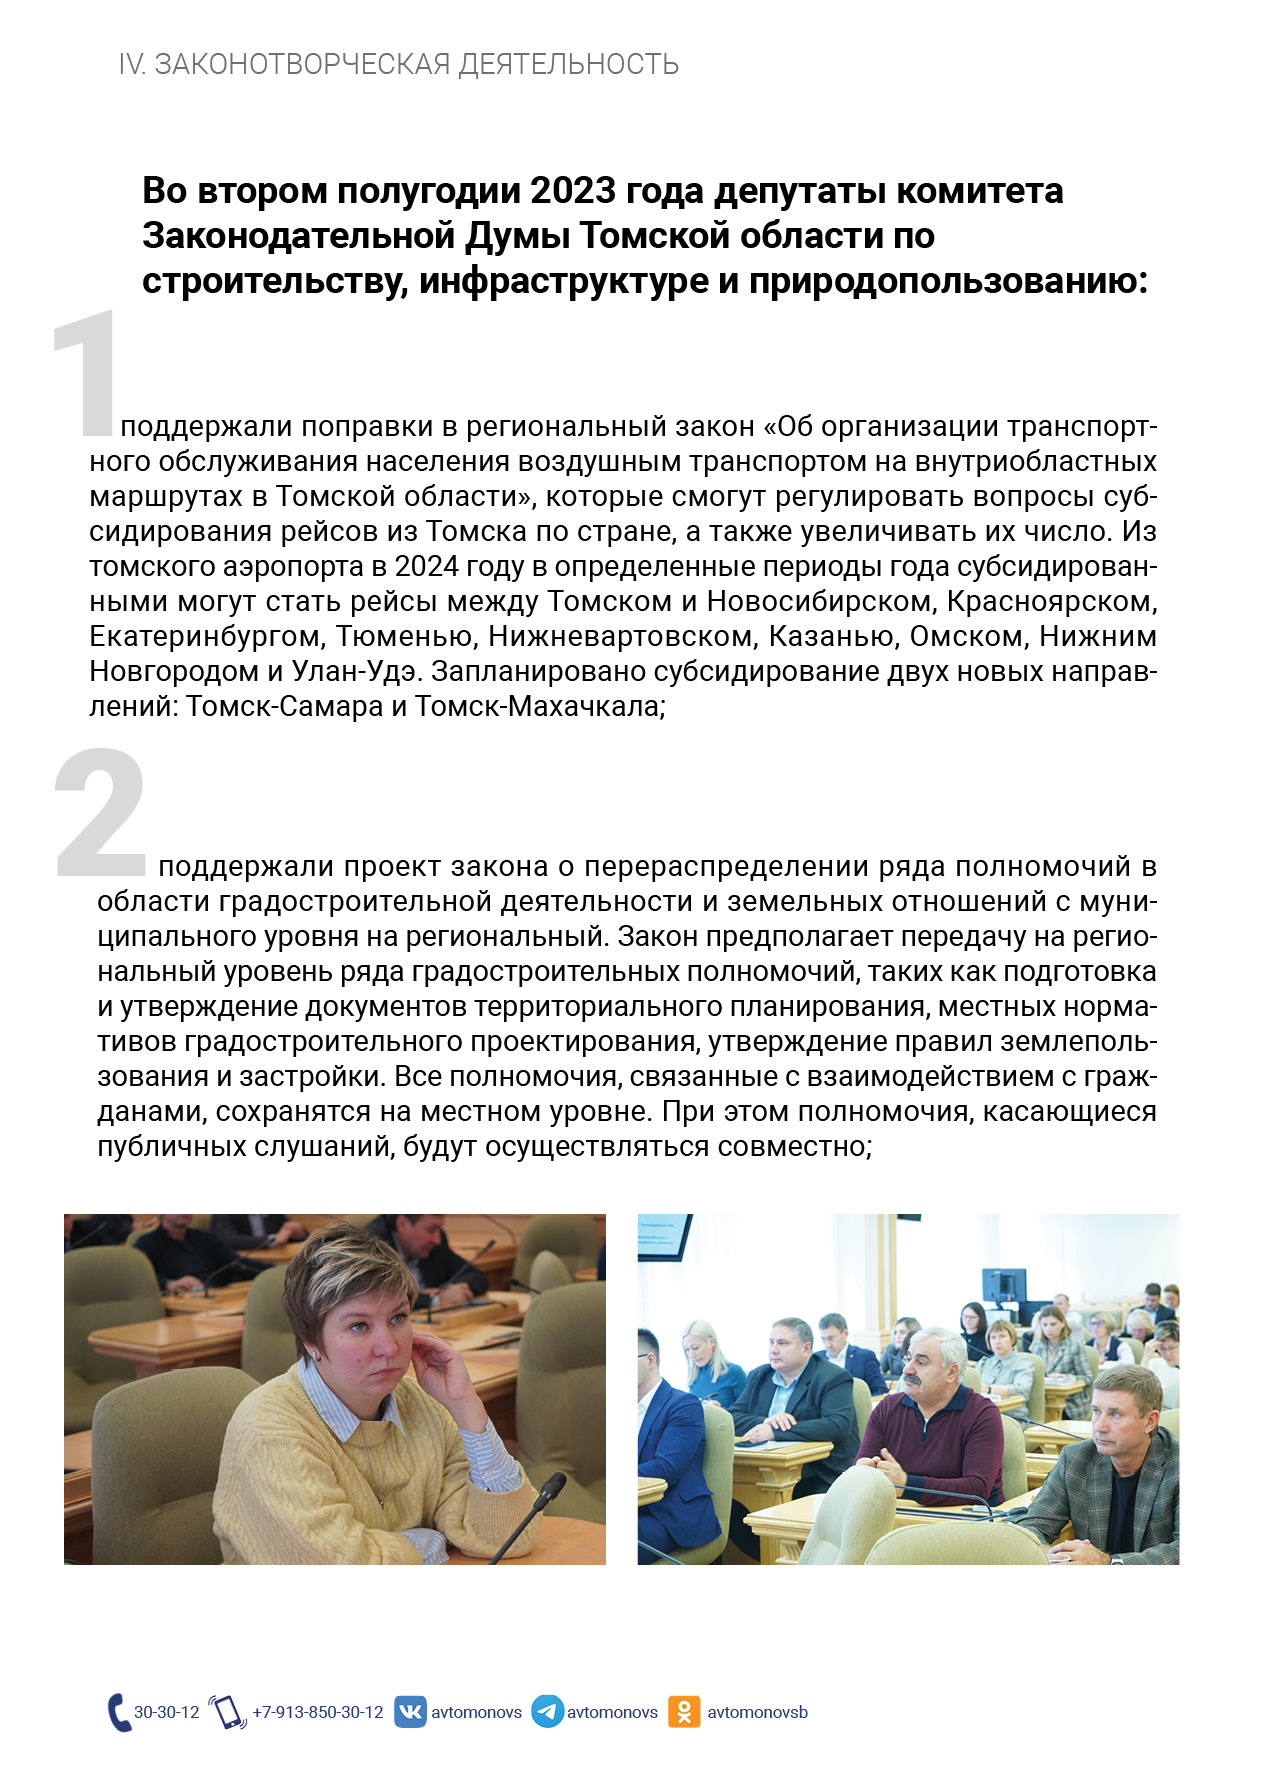 Отчет о работе депутата С.Б. Автомонова за II полугодие 2023 года